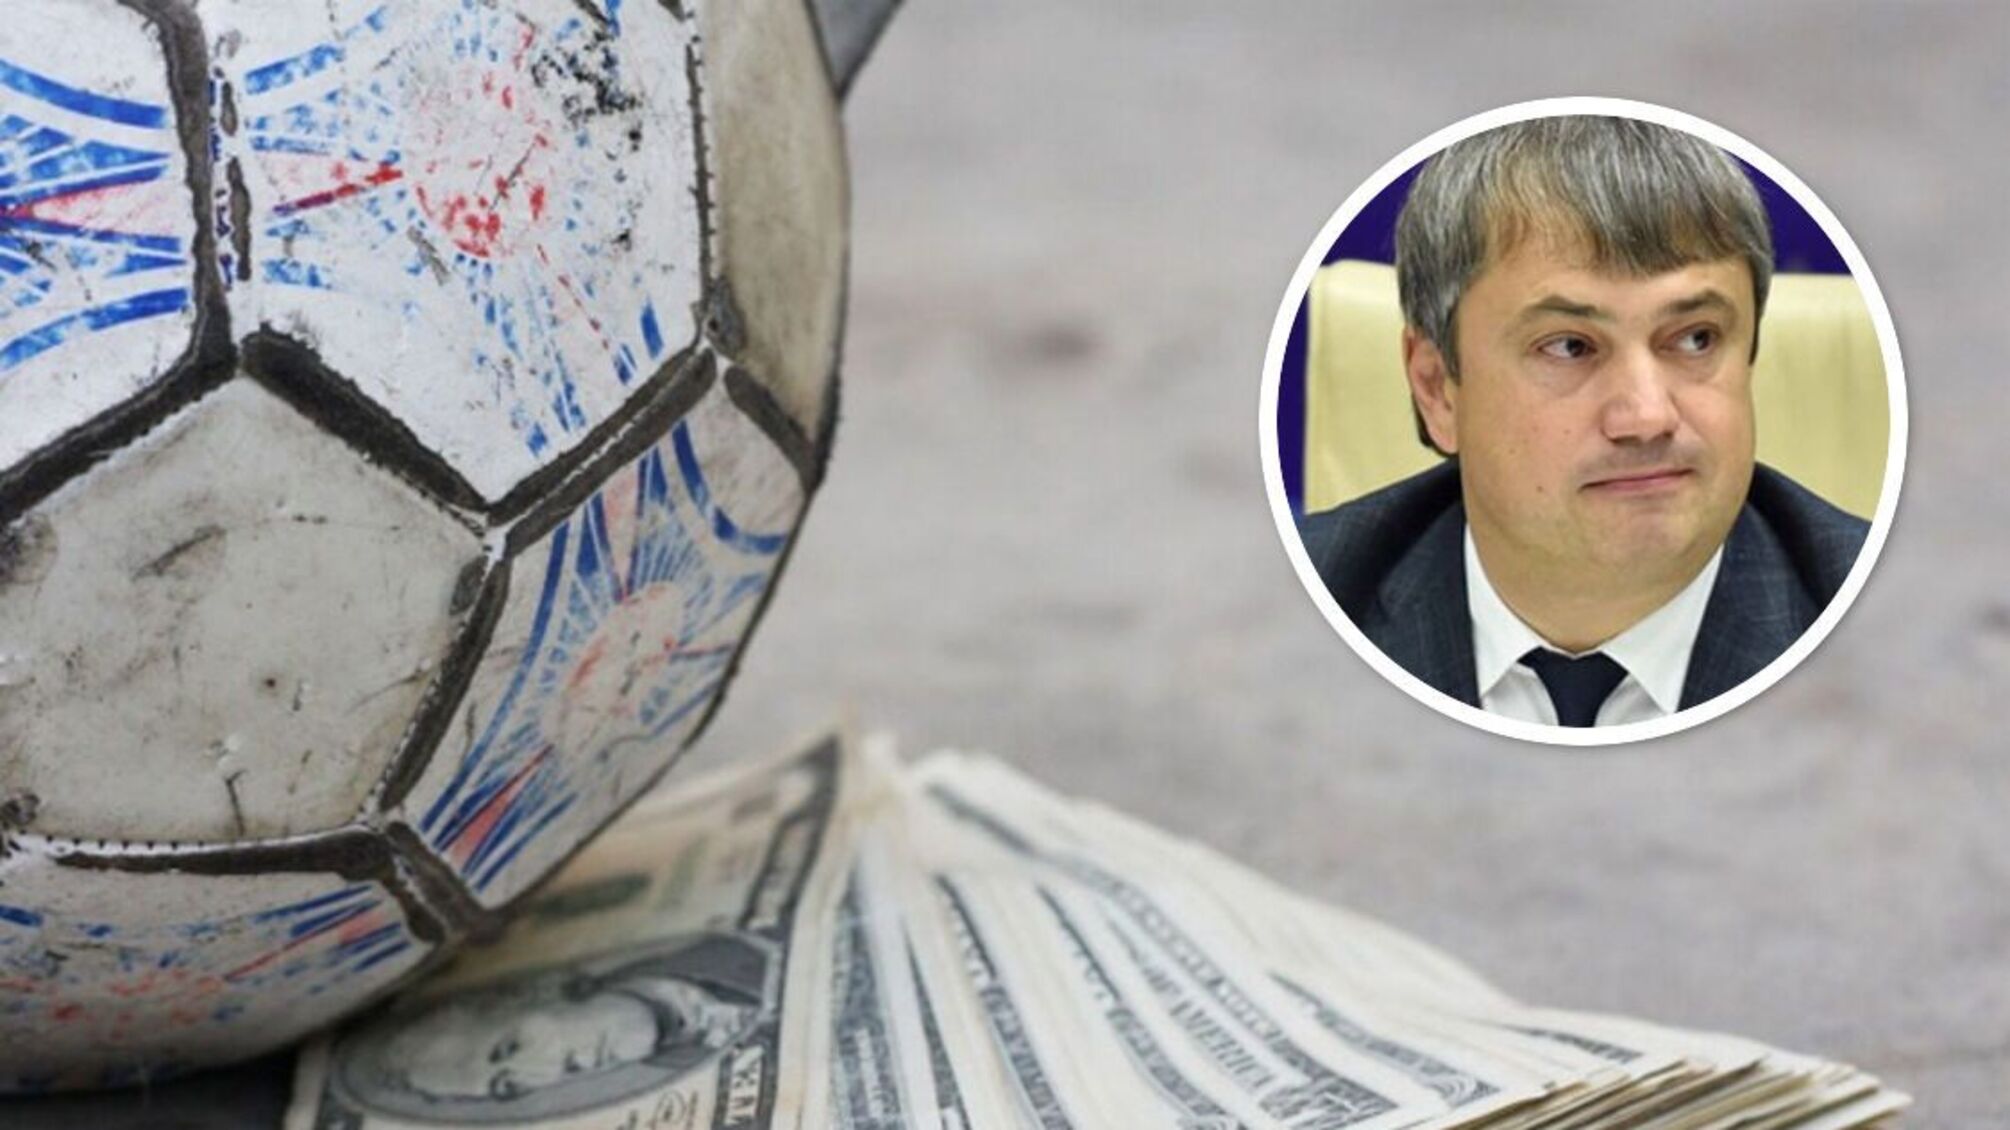 'Схема' на $2,5 млн і маєток під Києвом: журналісти дослідили справи віцепрезидента УАФ Костюченка 